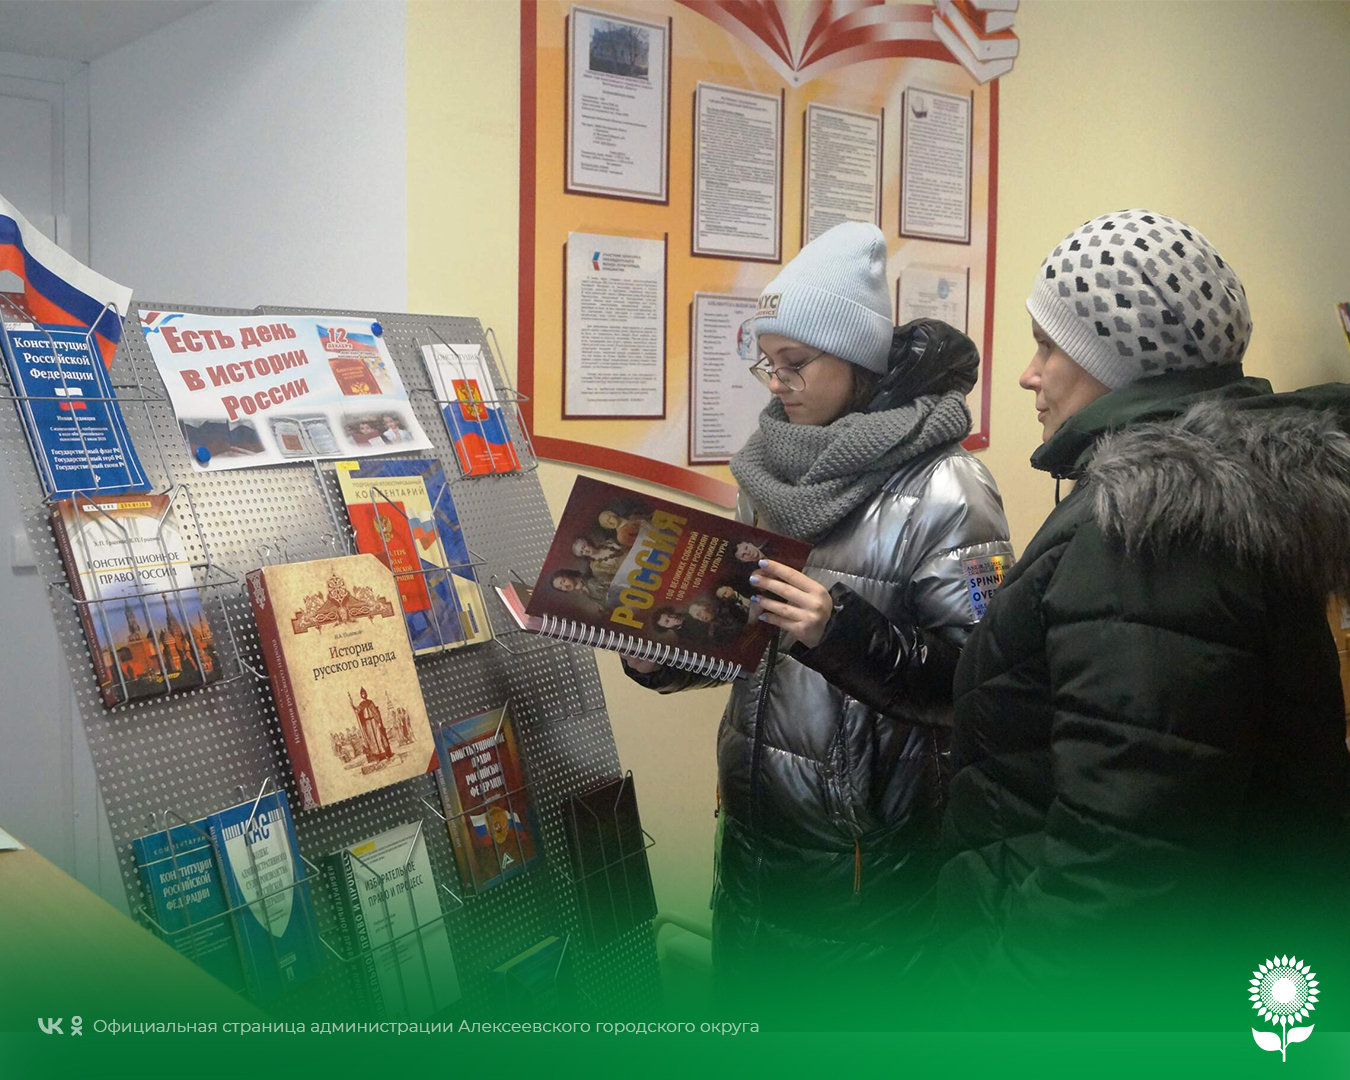 В День Конституции России в Городской модельной библиотеке №1 прошёл час правовой информации «Есть день в истории России».